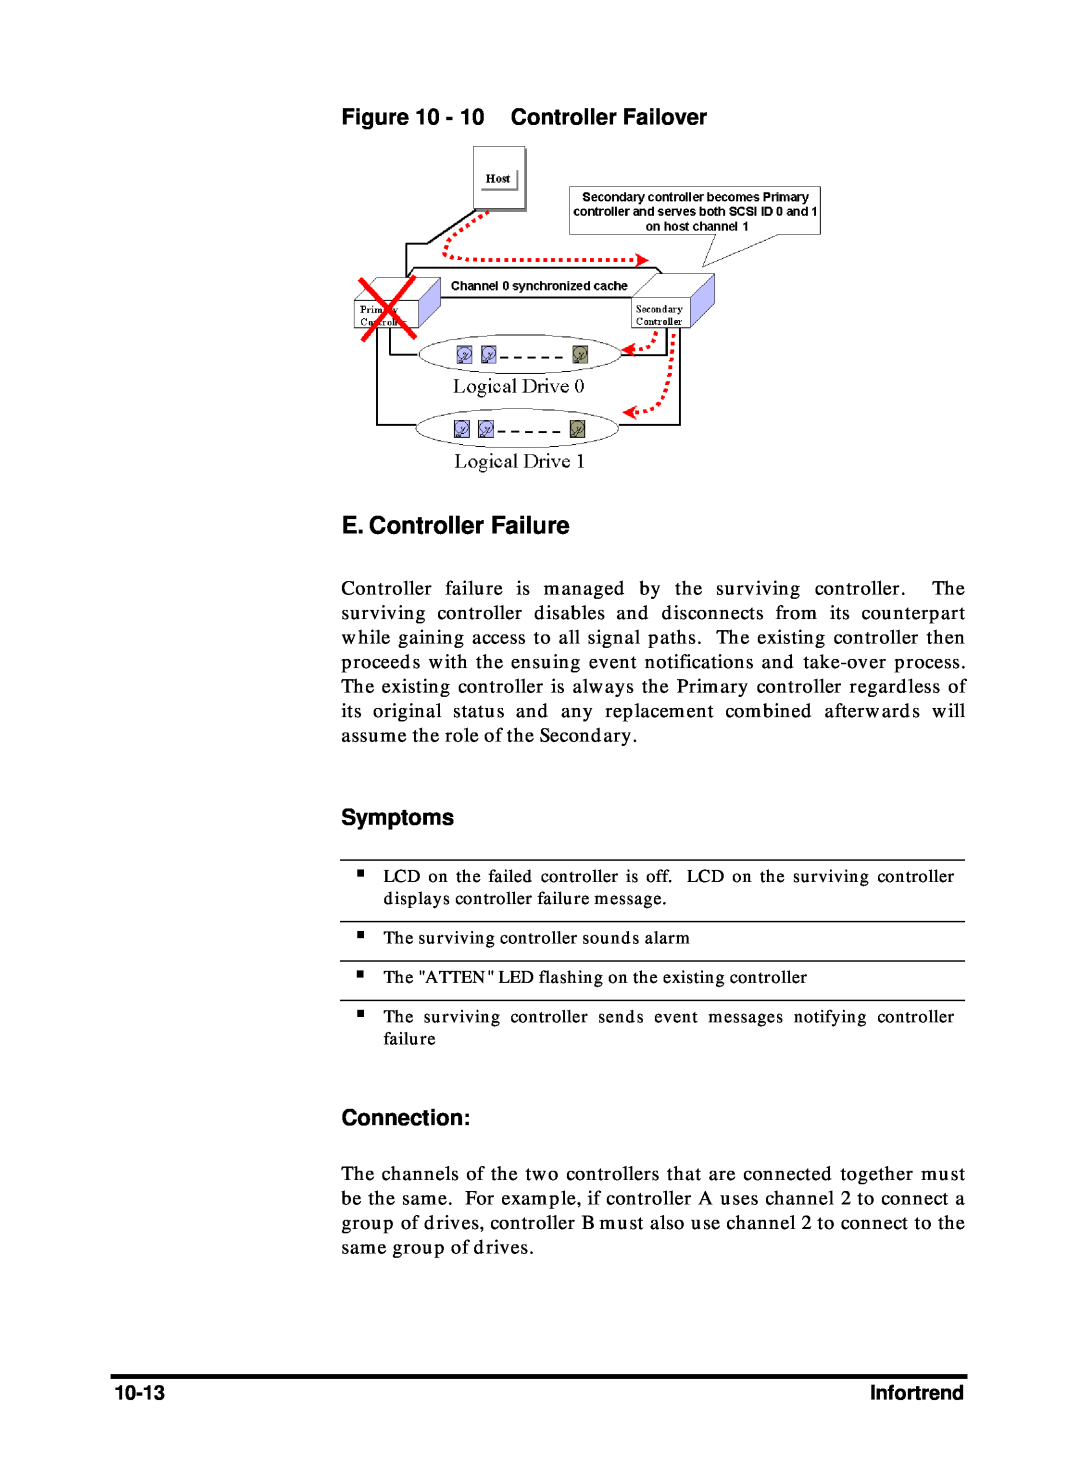 Compaq Infortrend manual E. Controller Failure, 10 Controller Failover, Symptoms, Connection 